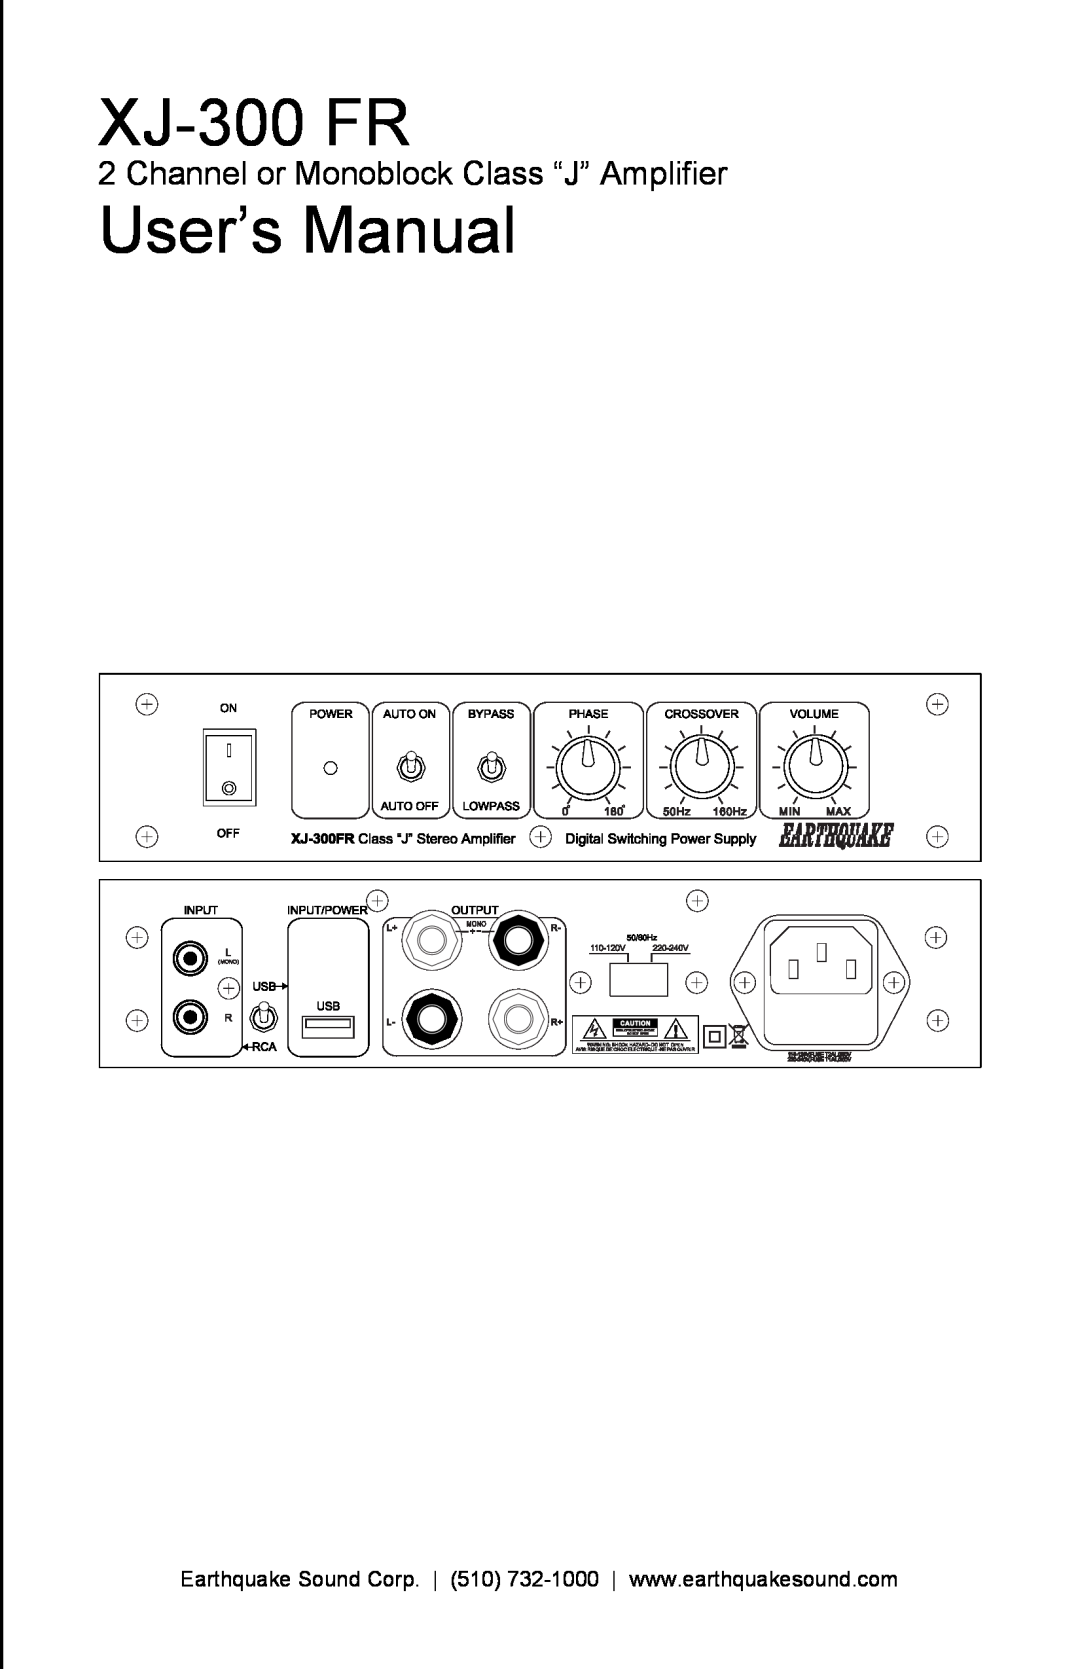 Earthquake Sound XJ-300 FR user manual Channel or Monoblock Class “J” Amplifier, XJ-300FR 